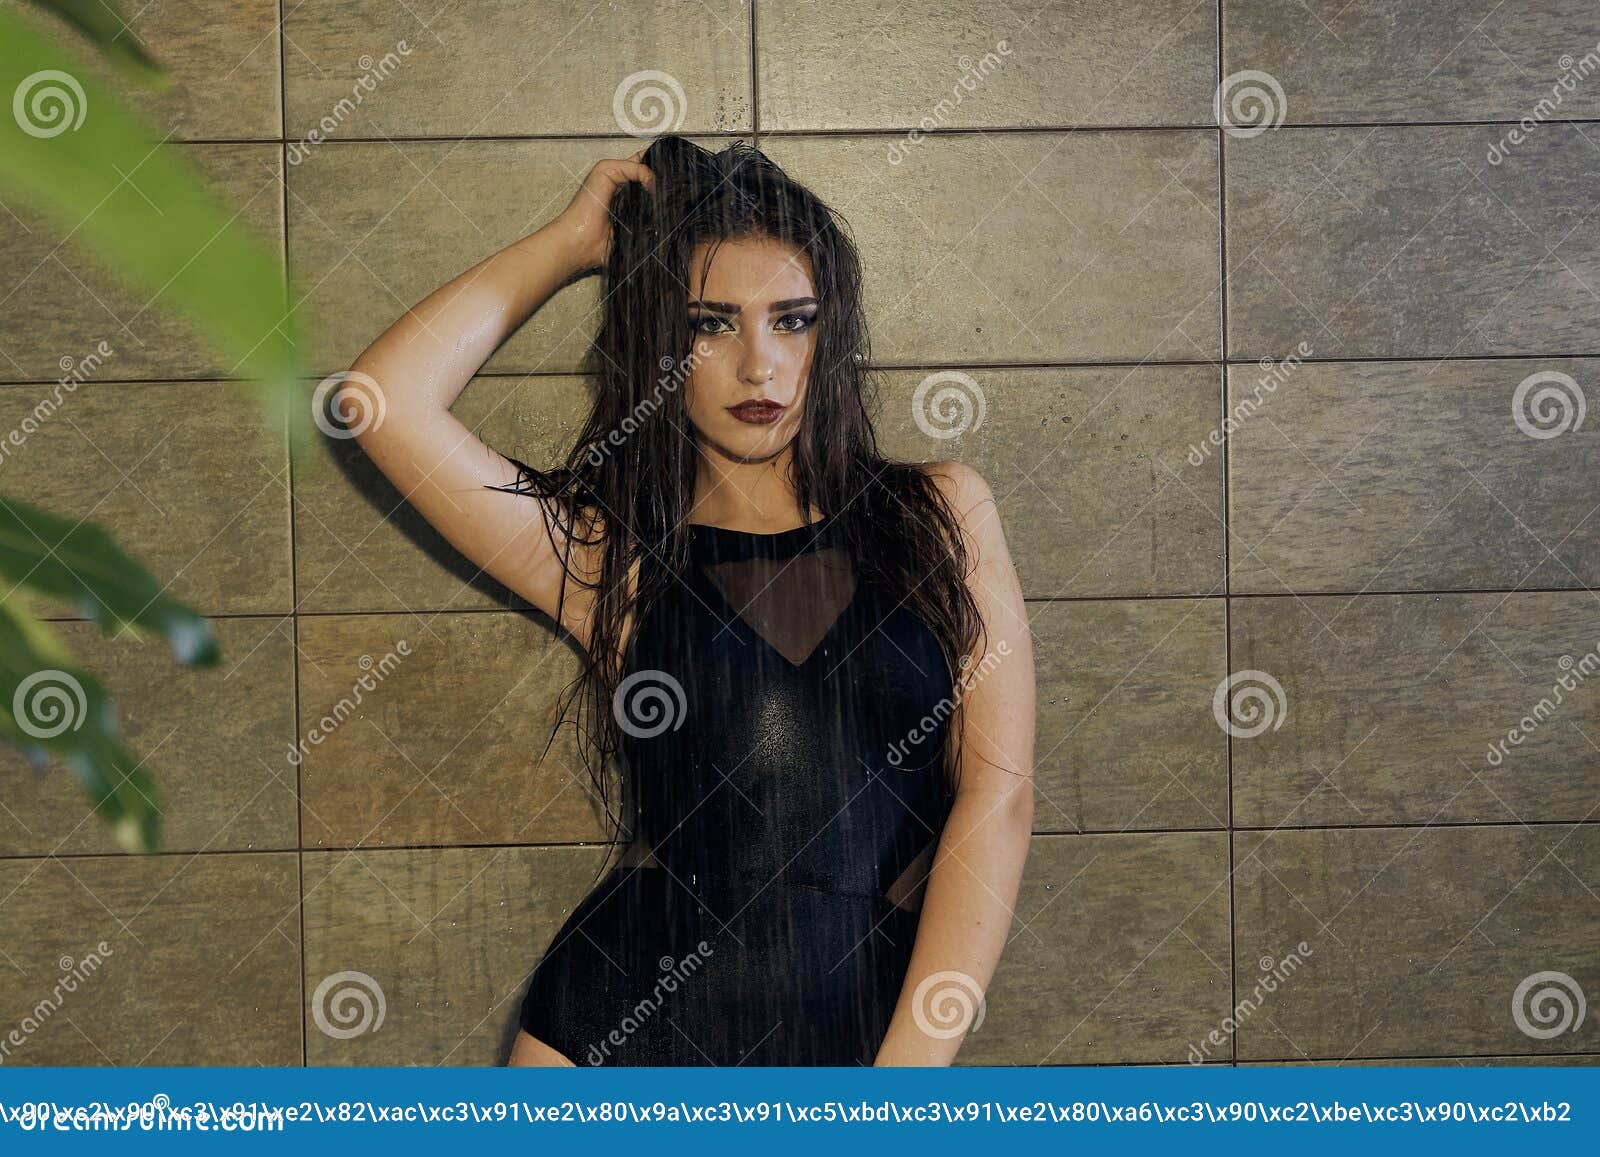 Girl shower taking teen black